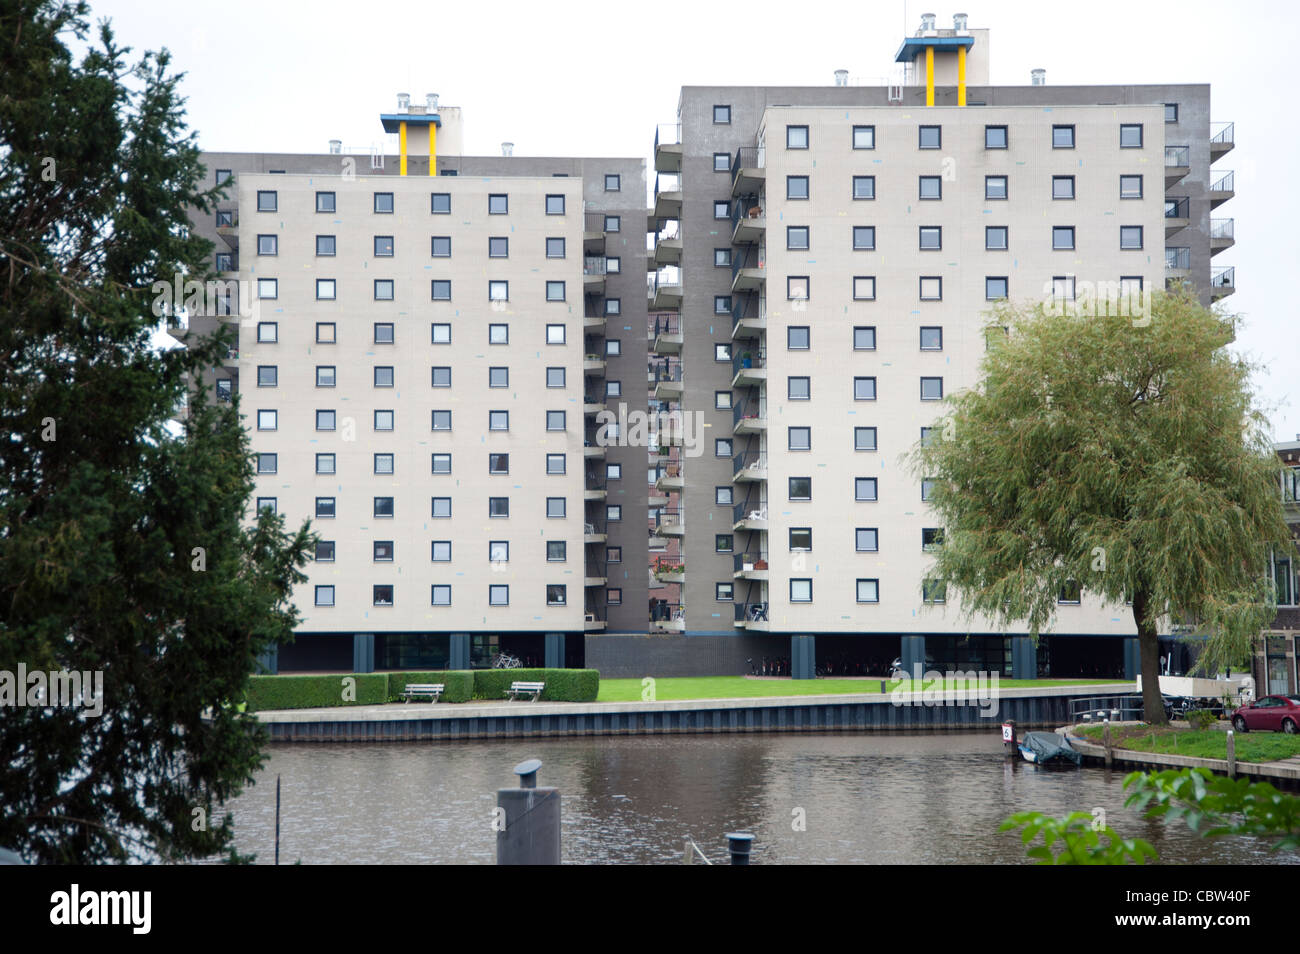 Appartements de Brink par l'architecte néerlandais Rem Koolhaas, OMA. Groningen Pays-Bas Banque D'Images